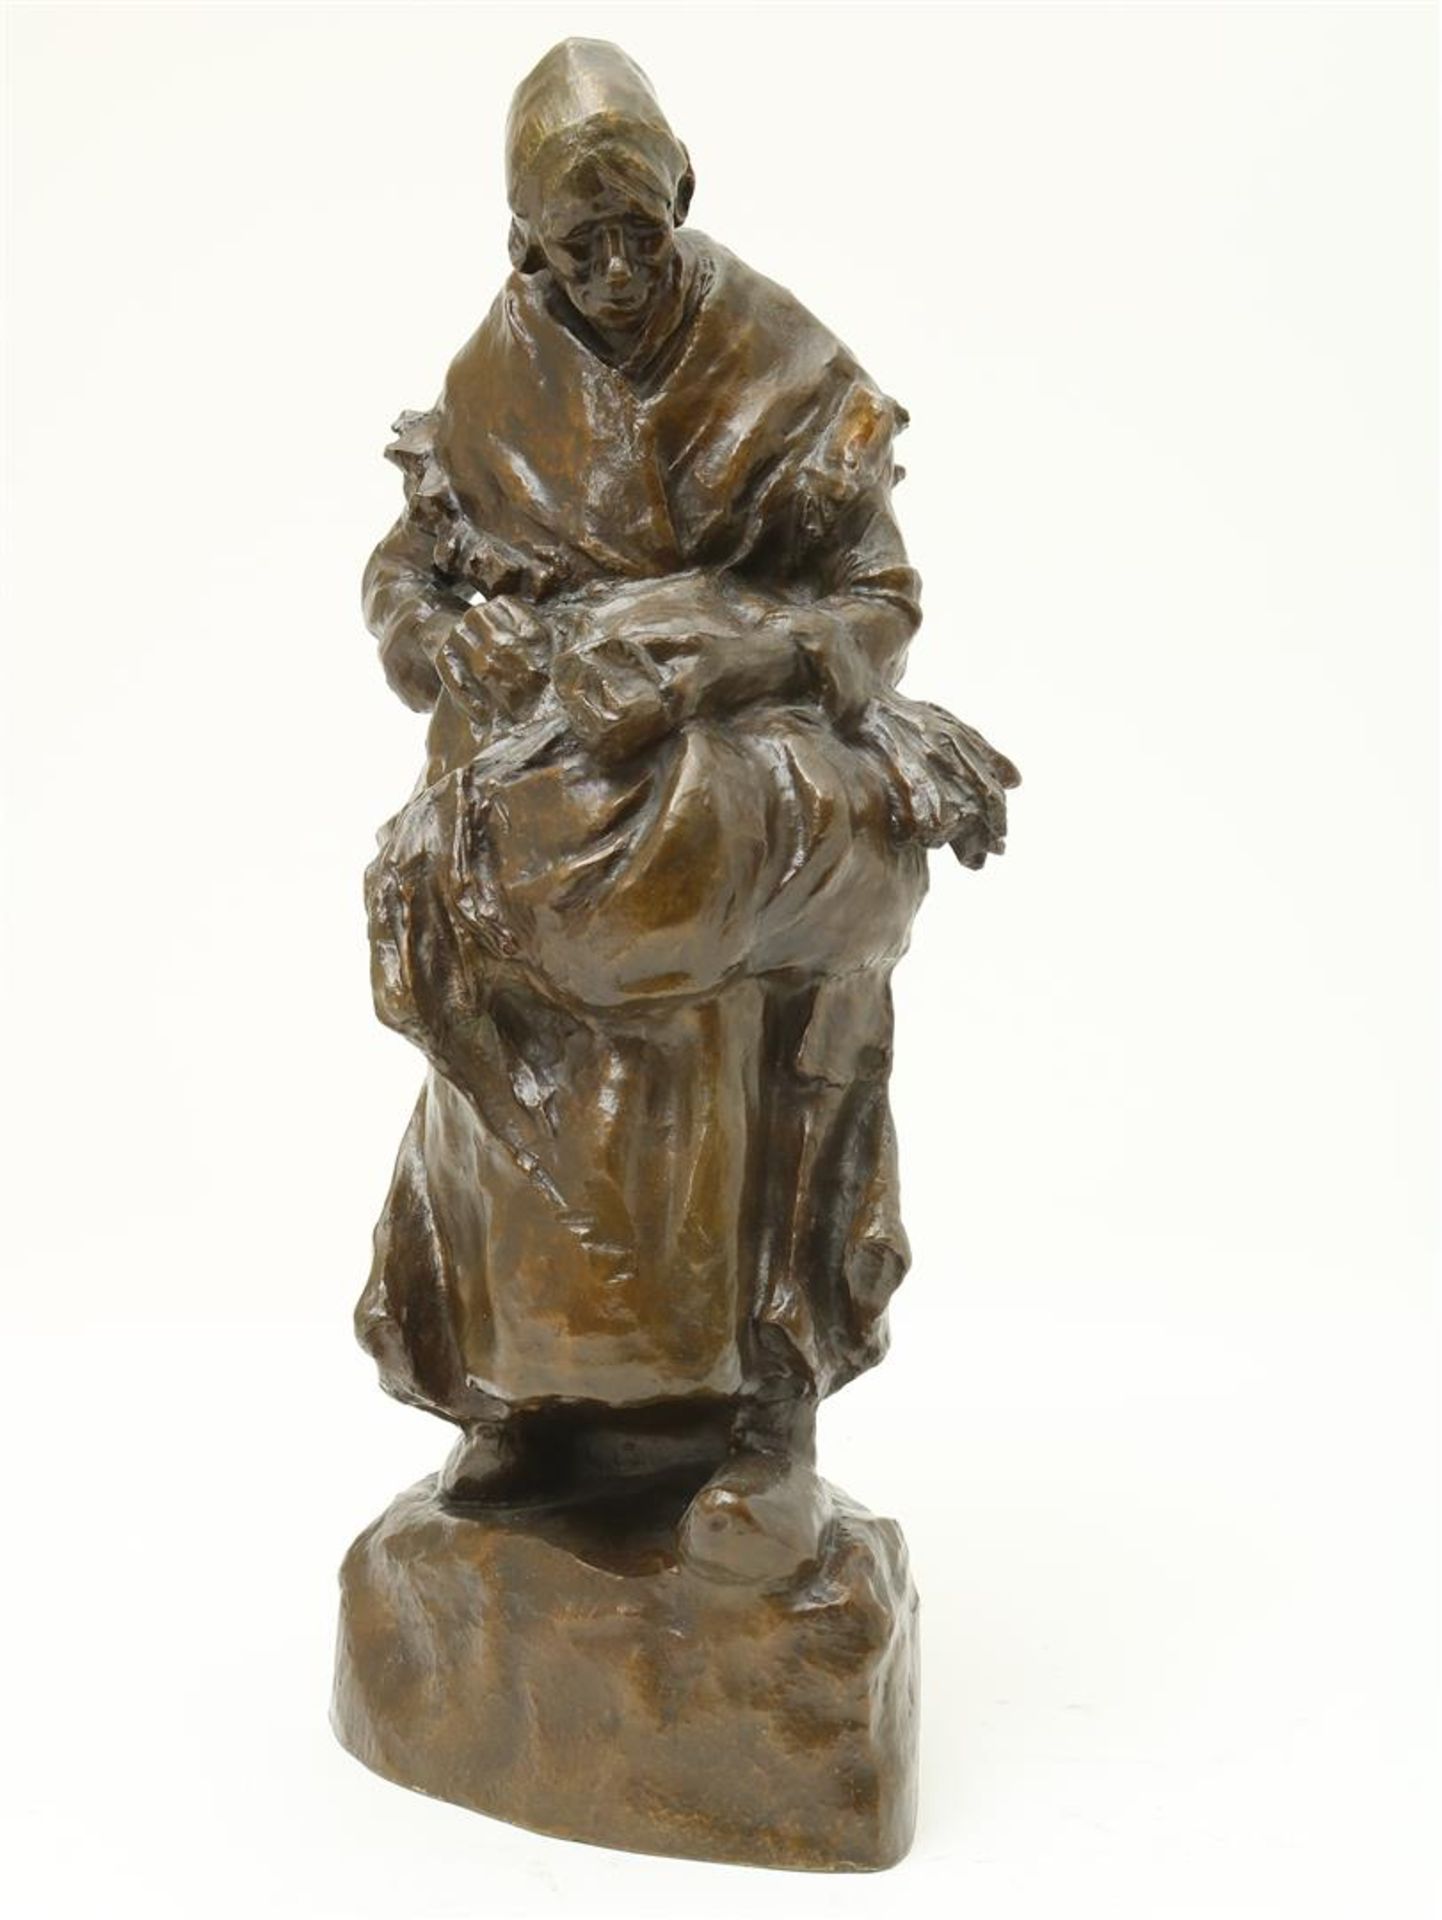 Wijk, "Charles" van. Bronze sculpture